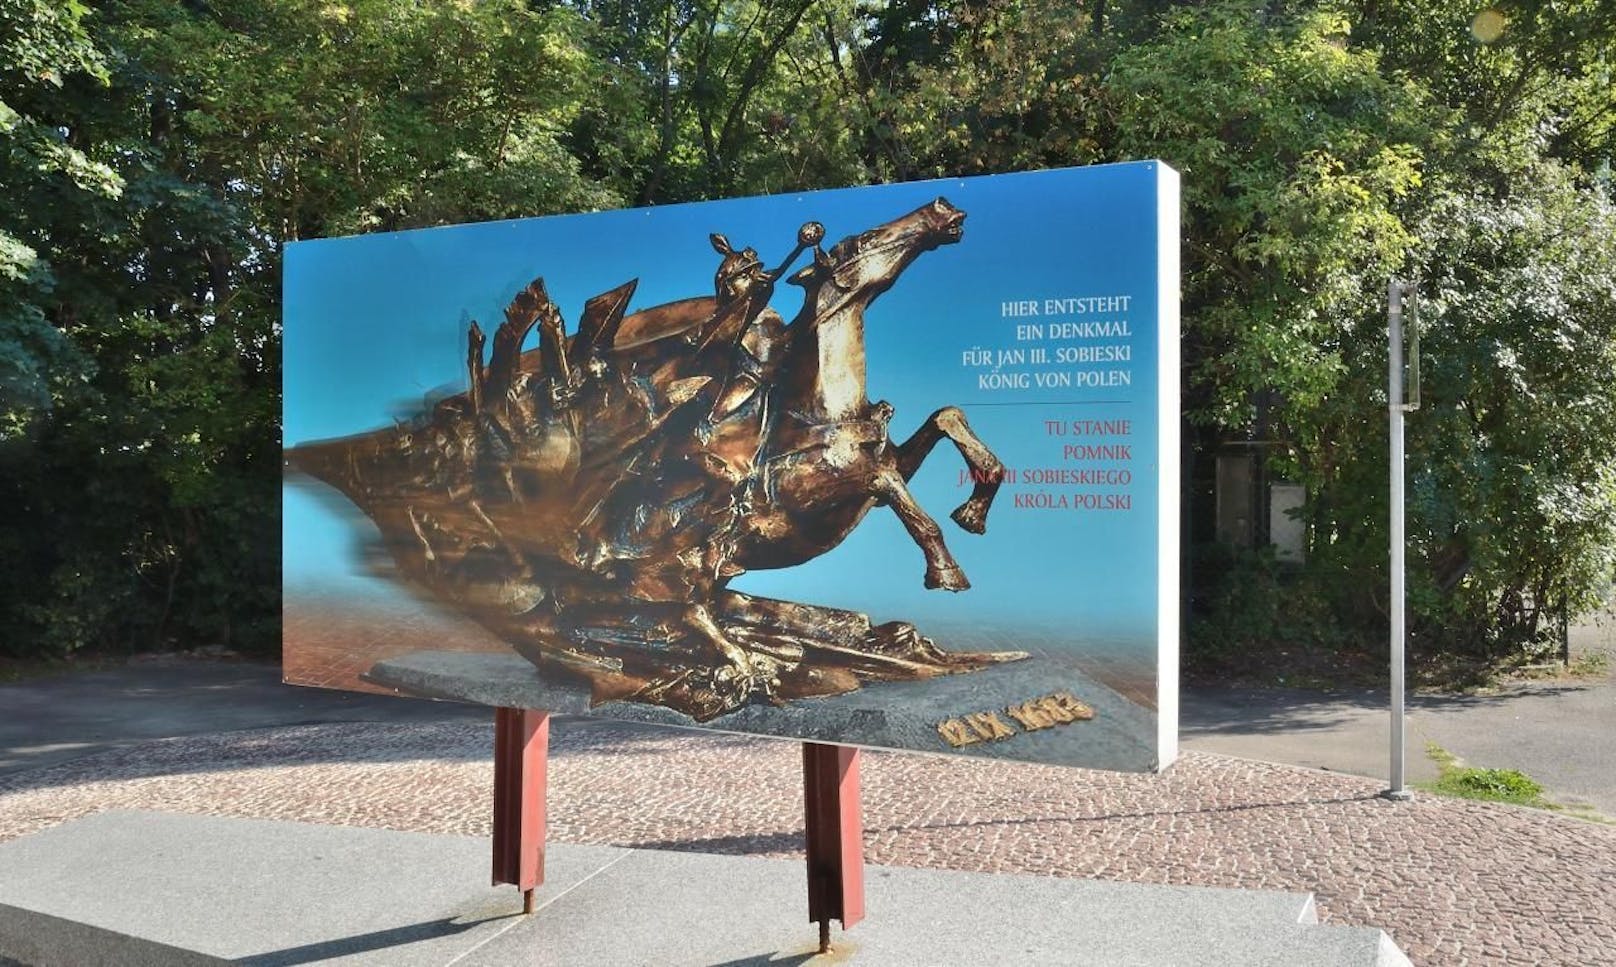 Bis Herbst 2016 stand auf dem Sockel beim Wiener Kahlenberg eine Tafel, auf der auch das nun abgelehnte Denkmal zu sehen war. (c) Wikipedia